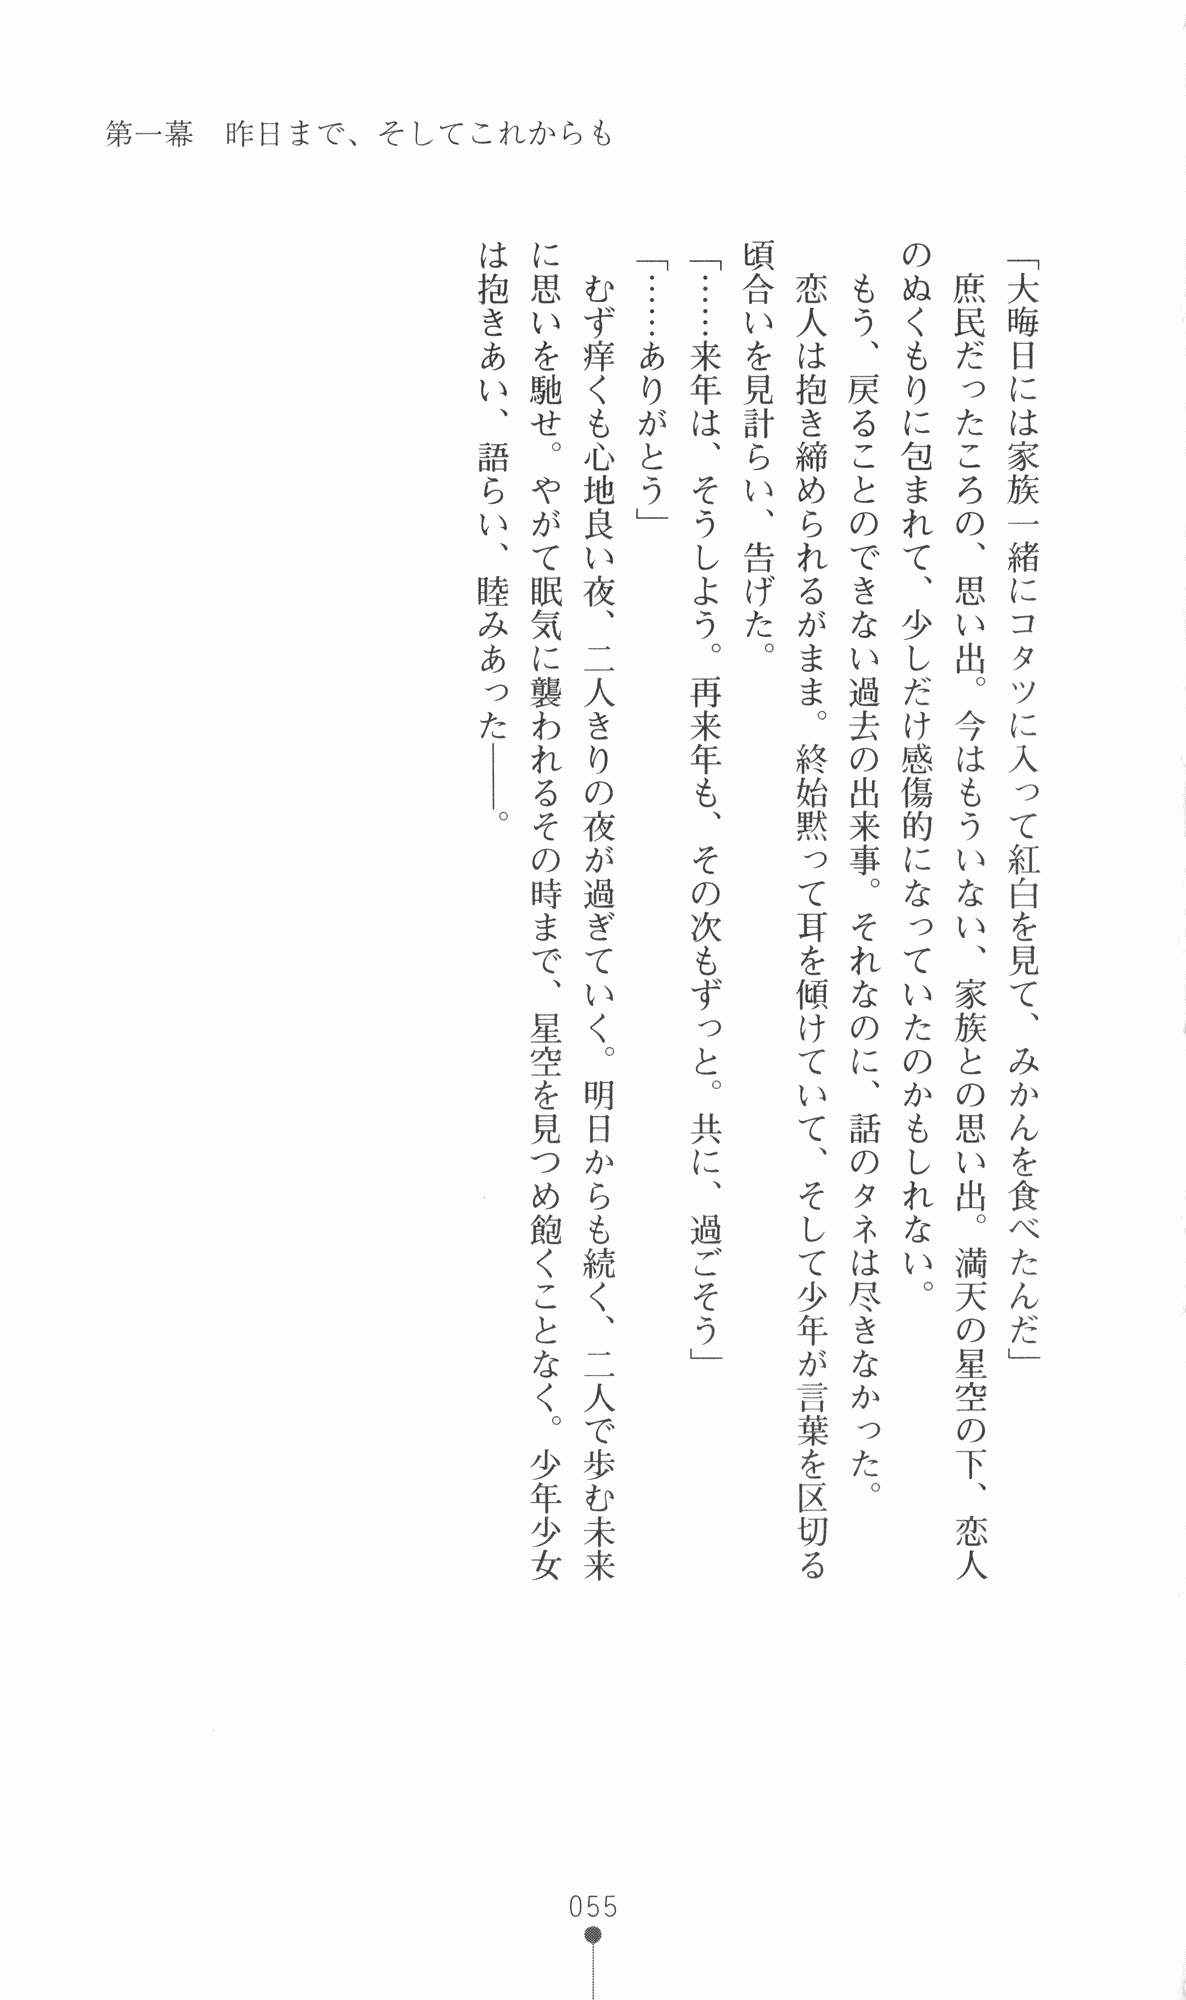 [Utsusemi × Yoshi Hyuma, Komori Kei] Princess Lover! Sylvia van Hossen no Koiji 2 (Original by Ricotta) 78